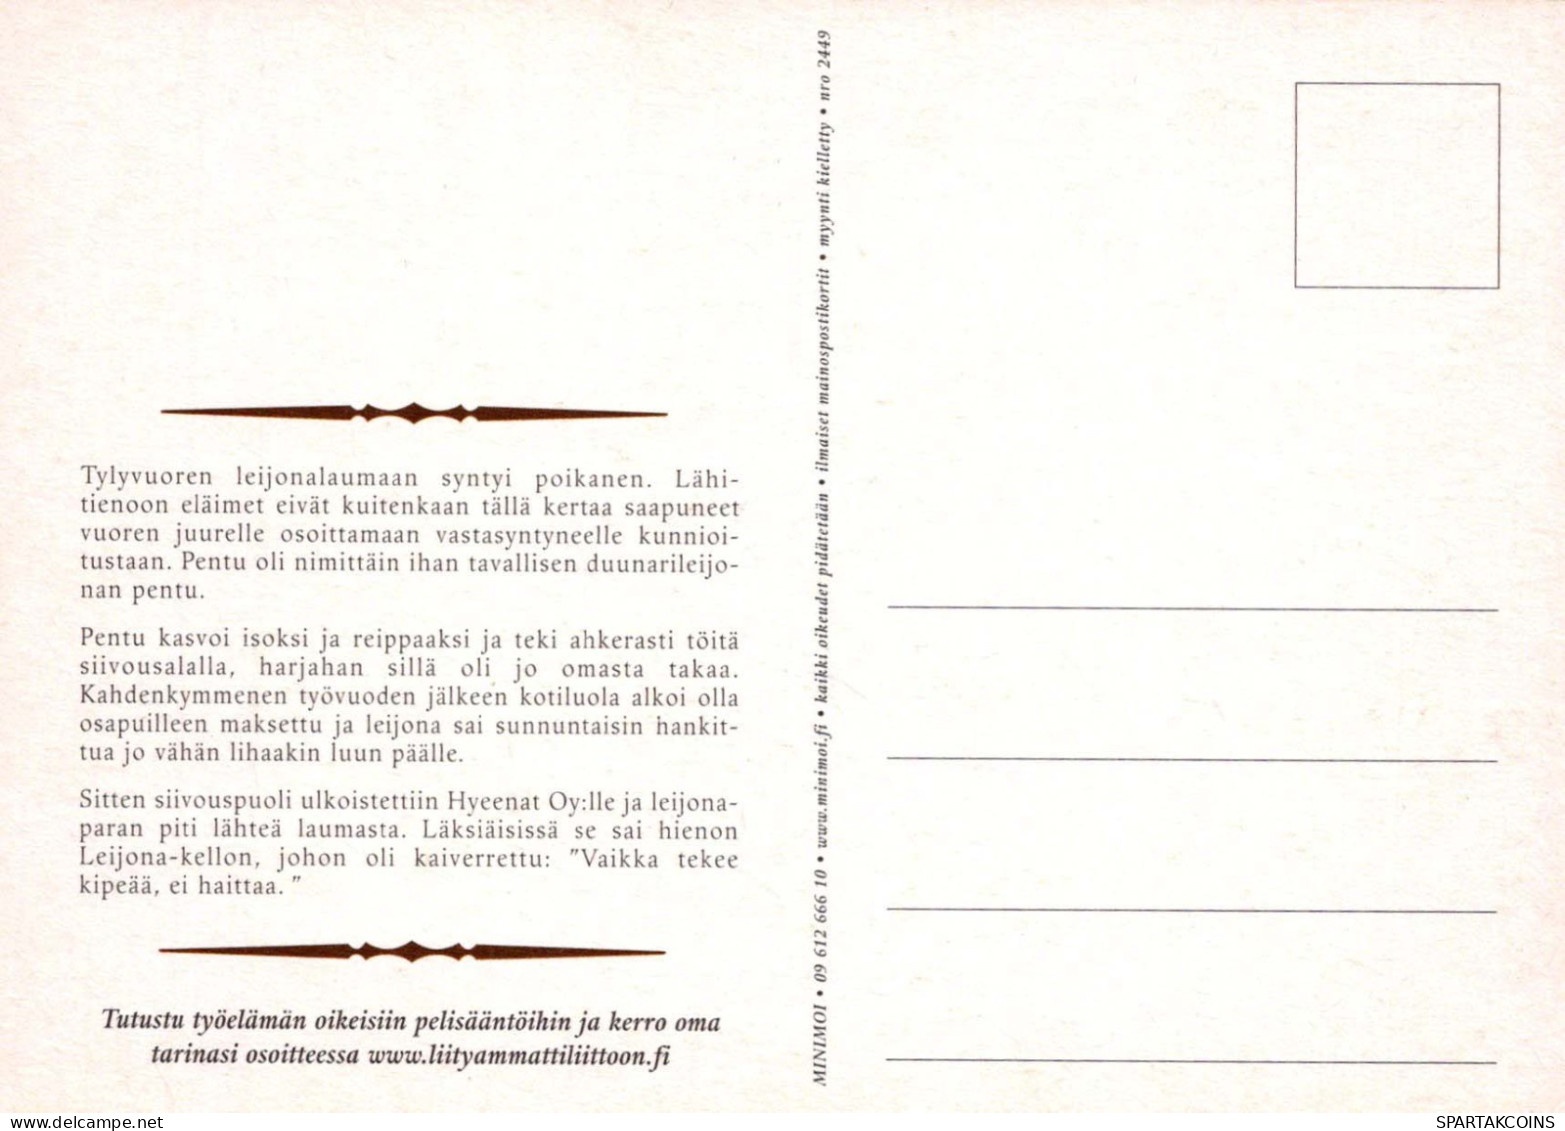 LION Animaux Vintage Carte Postale CPSM #PBS059.FR - Löwen